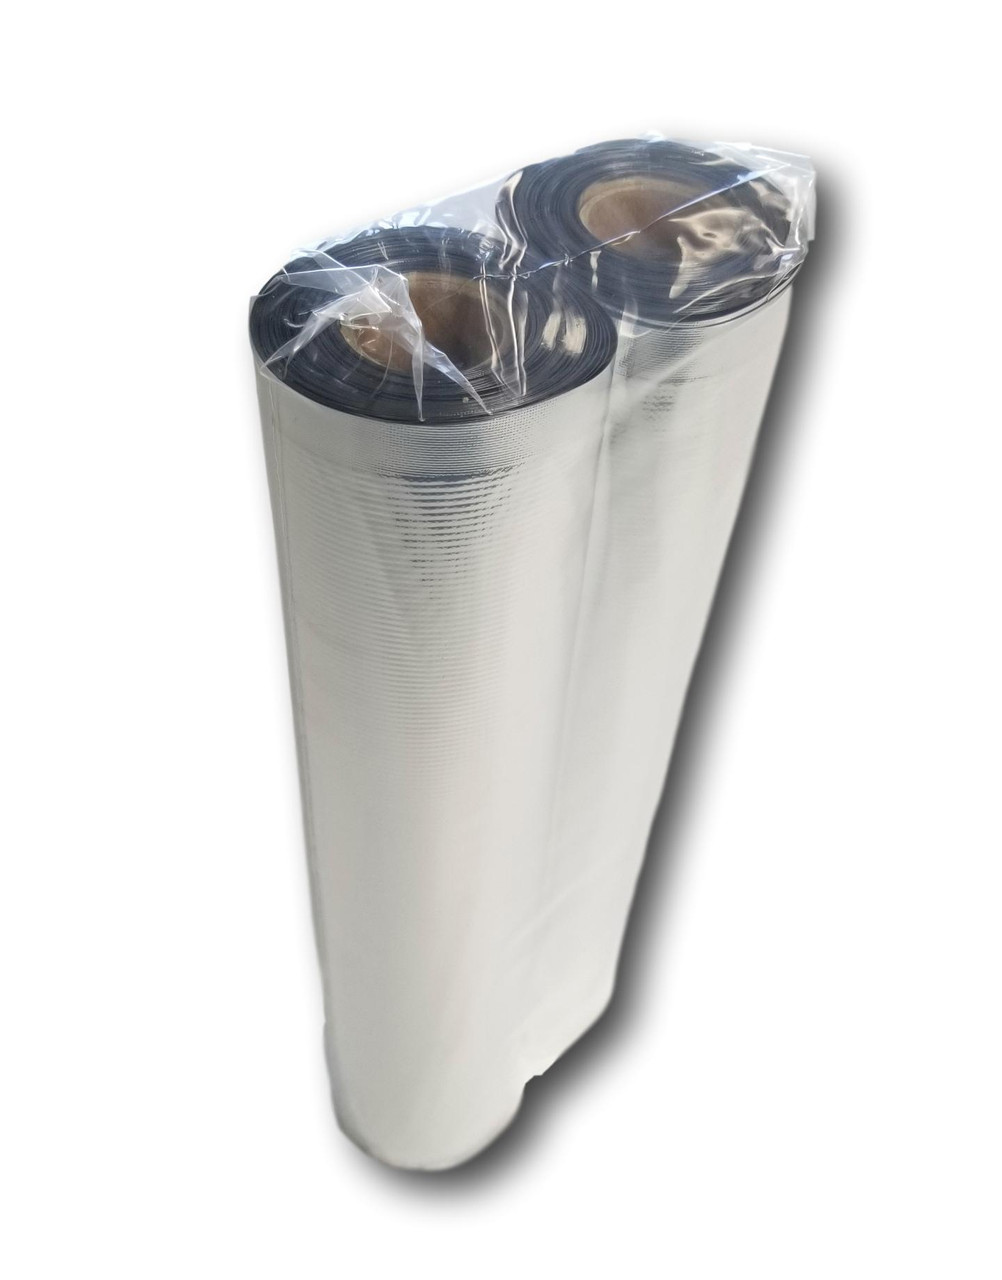 Foodsaver 11 x 16' Heat-Seal Roll